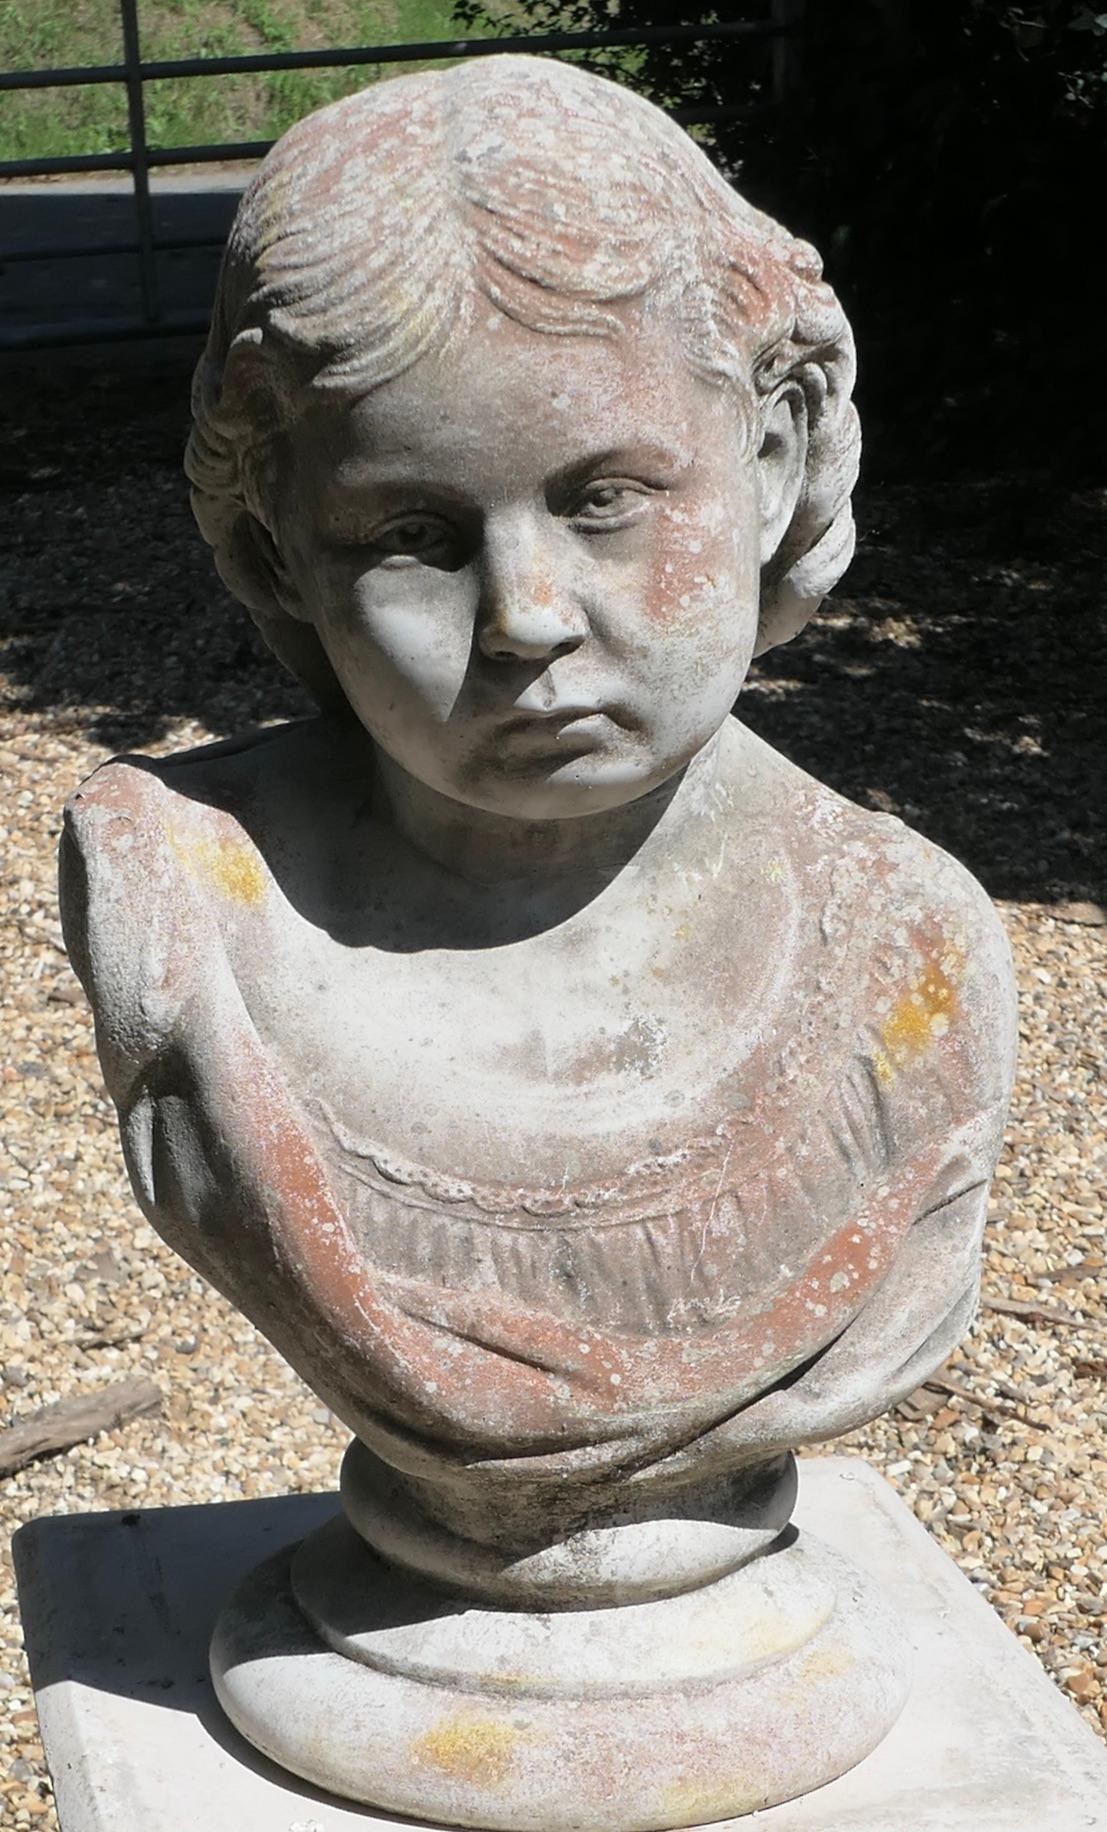  Buste tête et épaules d'une jeune fille Statue de jardin
Il s'agit d'un charmant buste détaillé d'une jeune fille plutôt mélancolique, remarquez les plis de sa robe et les boucles de ses cheveux.
La statue est joliment patinée. Elle mesure 20